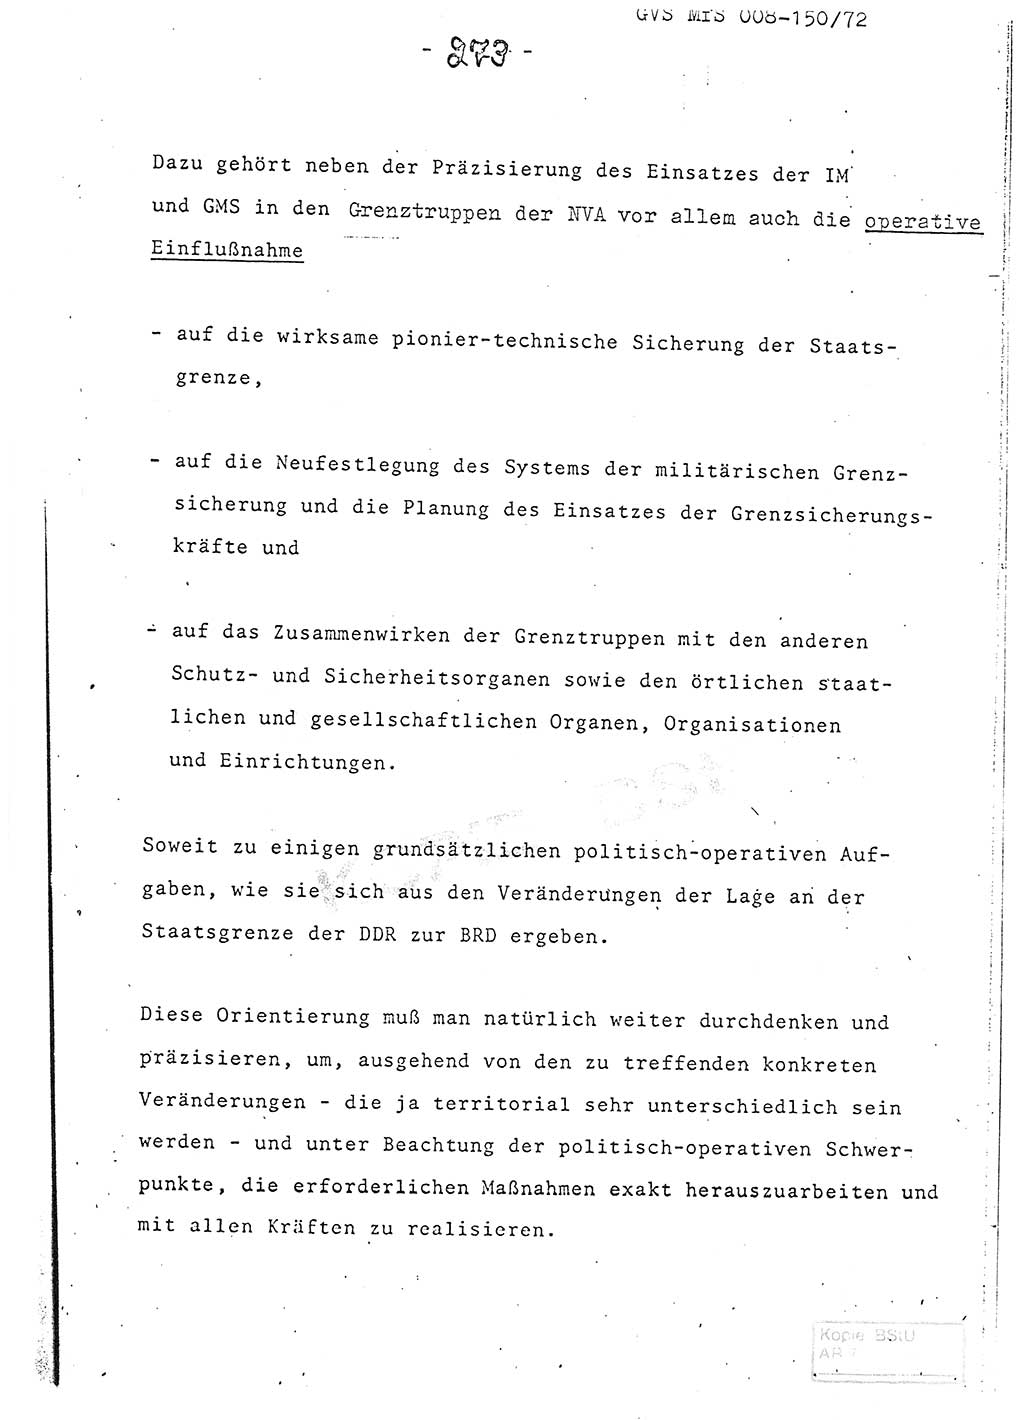 Referat (Entwurf) des Genossen Minister (Generaloberst Erich Mielke) auf der Dienstkonferenz 1972, Ministerium für Staatssicherheit (MfS) [Deutsche Demokratische Republik (DDR)], Der Minister, Geheime Verschlußsache (GVS) 008-150/72, Berlin 25.2.1972, Seite 273 (Ref. Entw. DK MfS DDR Min. GVS 008-150/72 1972, S. 273)